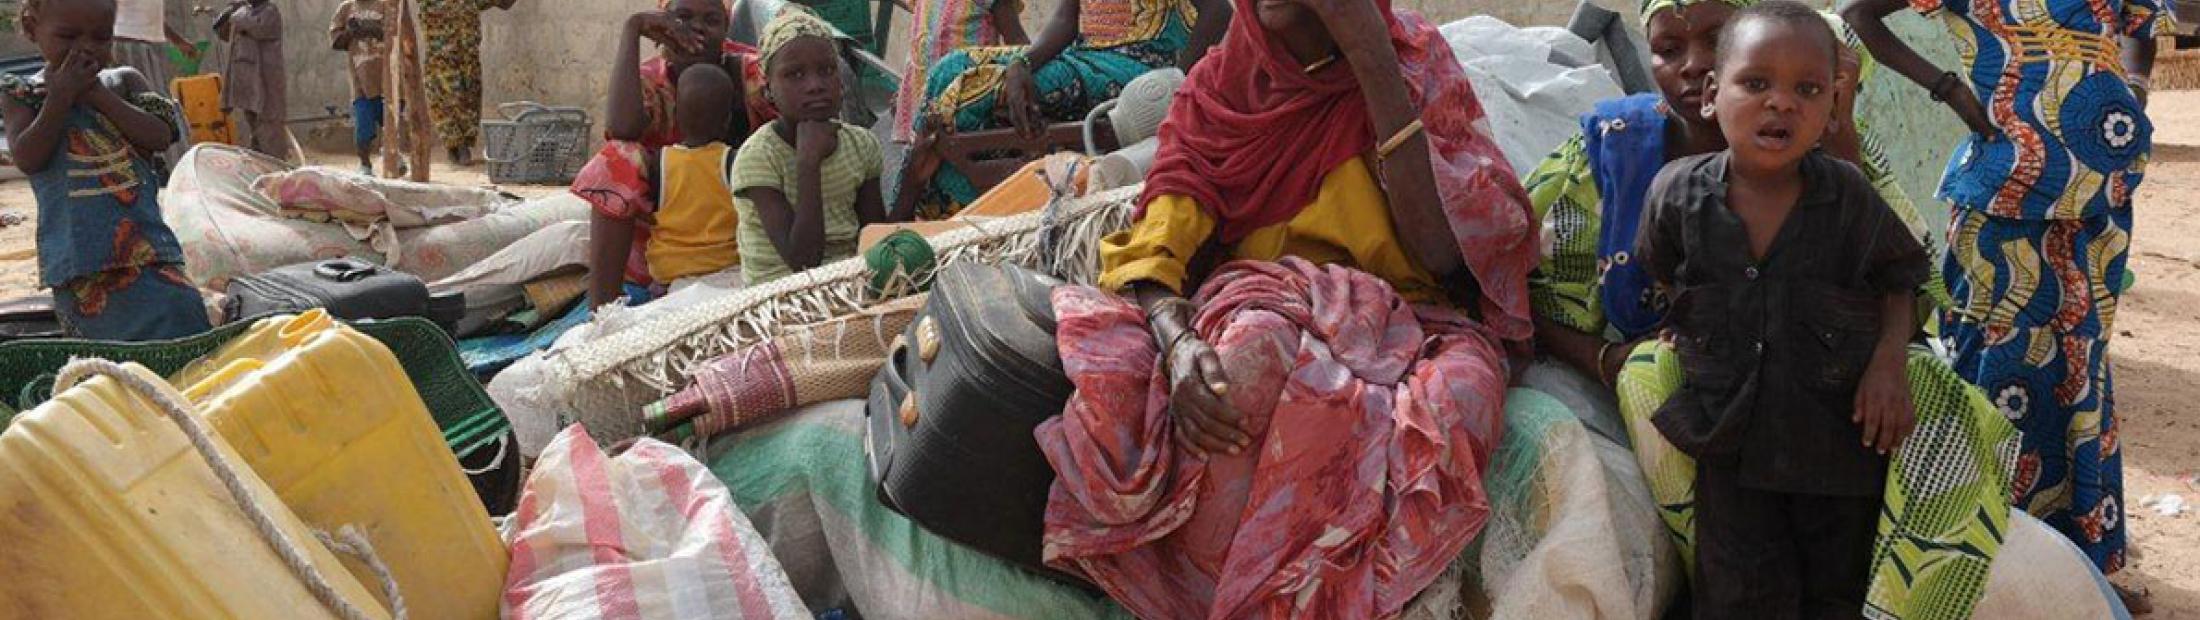 Los ataques de Boko Haram continúan provocando la huida de civiles en Nigeria y Níger